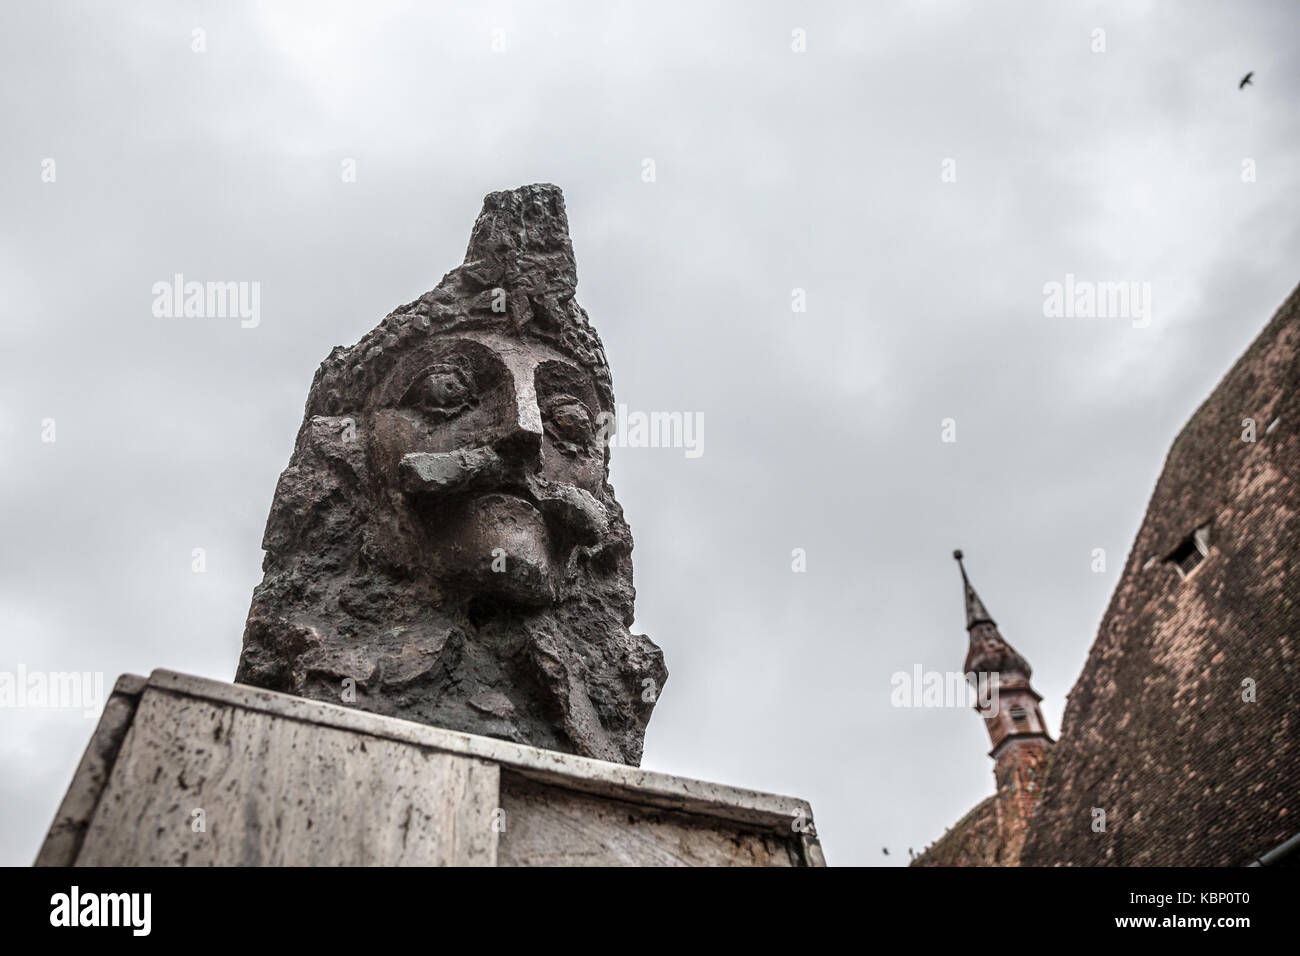 Sighisoara, Romania - 22 settembre 2017: Statua di Vlad Tepes, aka Vlad Dracul o dracula nella cittadella di sighisoara, dove egli era nato presumibilmente i Foto Stock